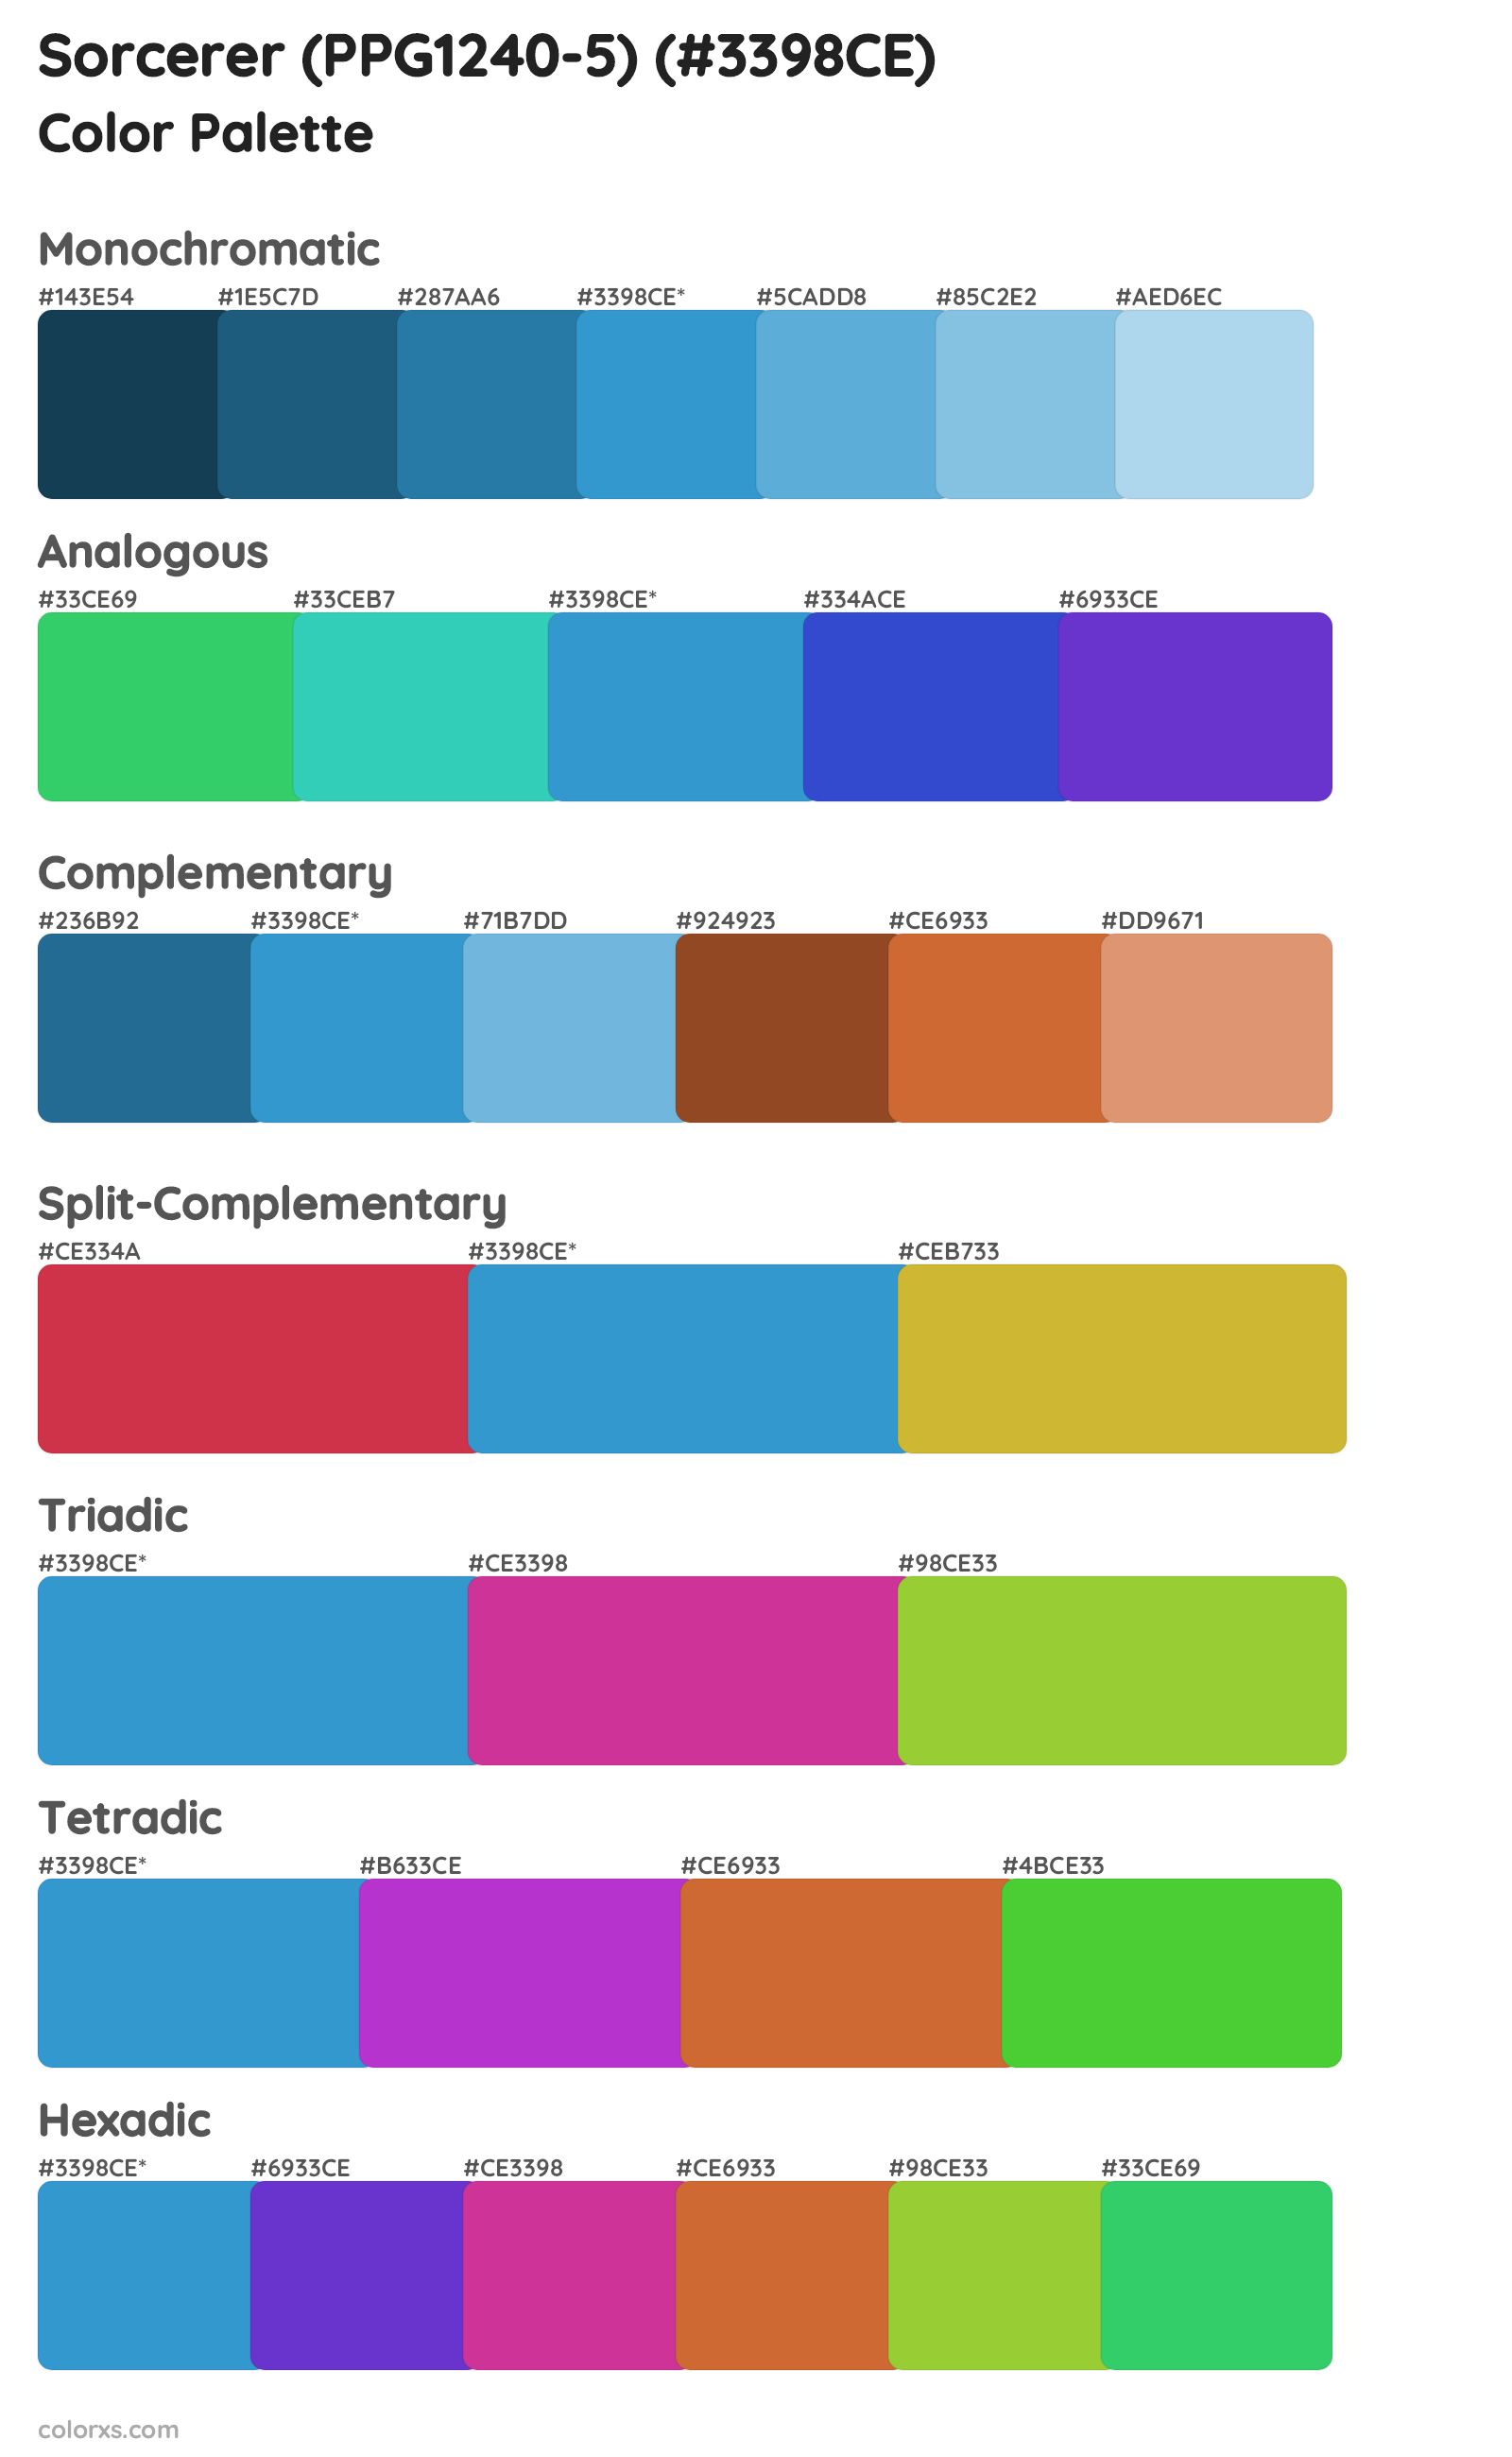 Sorcerer (PPG1240-5) Color Scheme Palettes